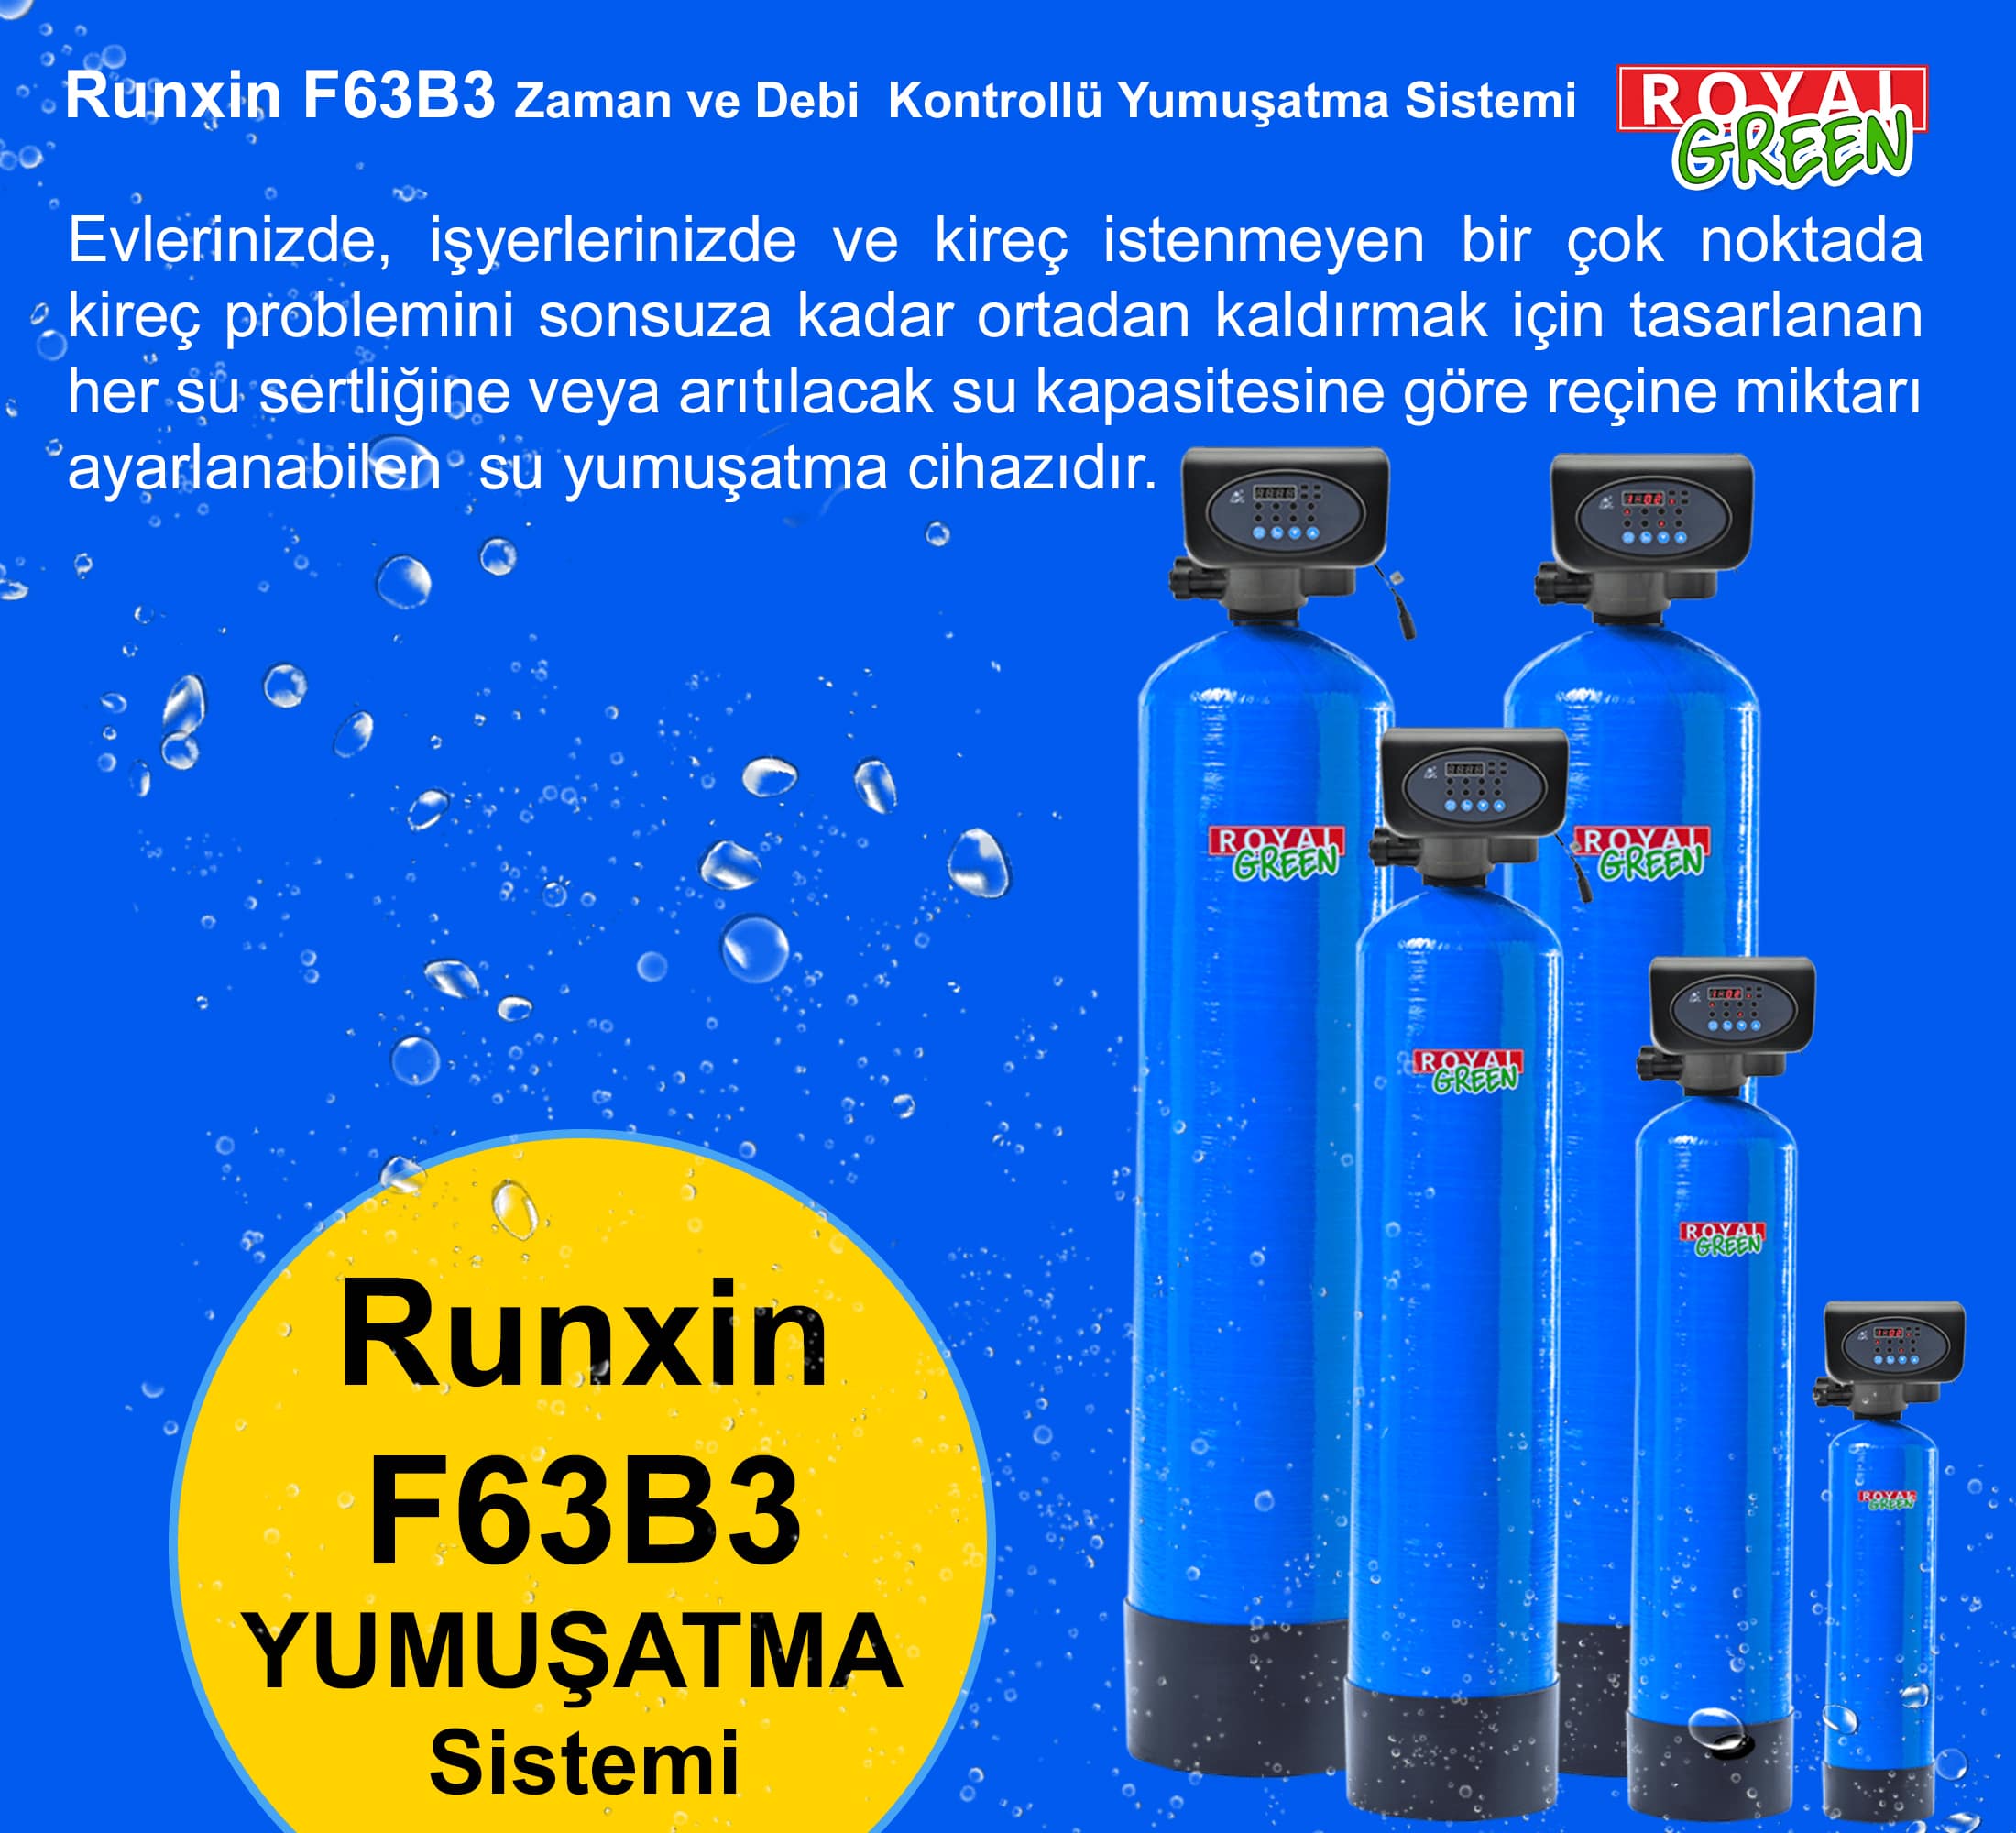 Runxin F63B3 (F70A) Zaman veya Debi Kontrollü Yumuşatma Sistemi Banner